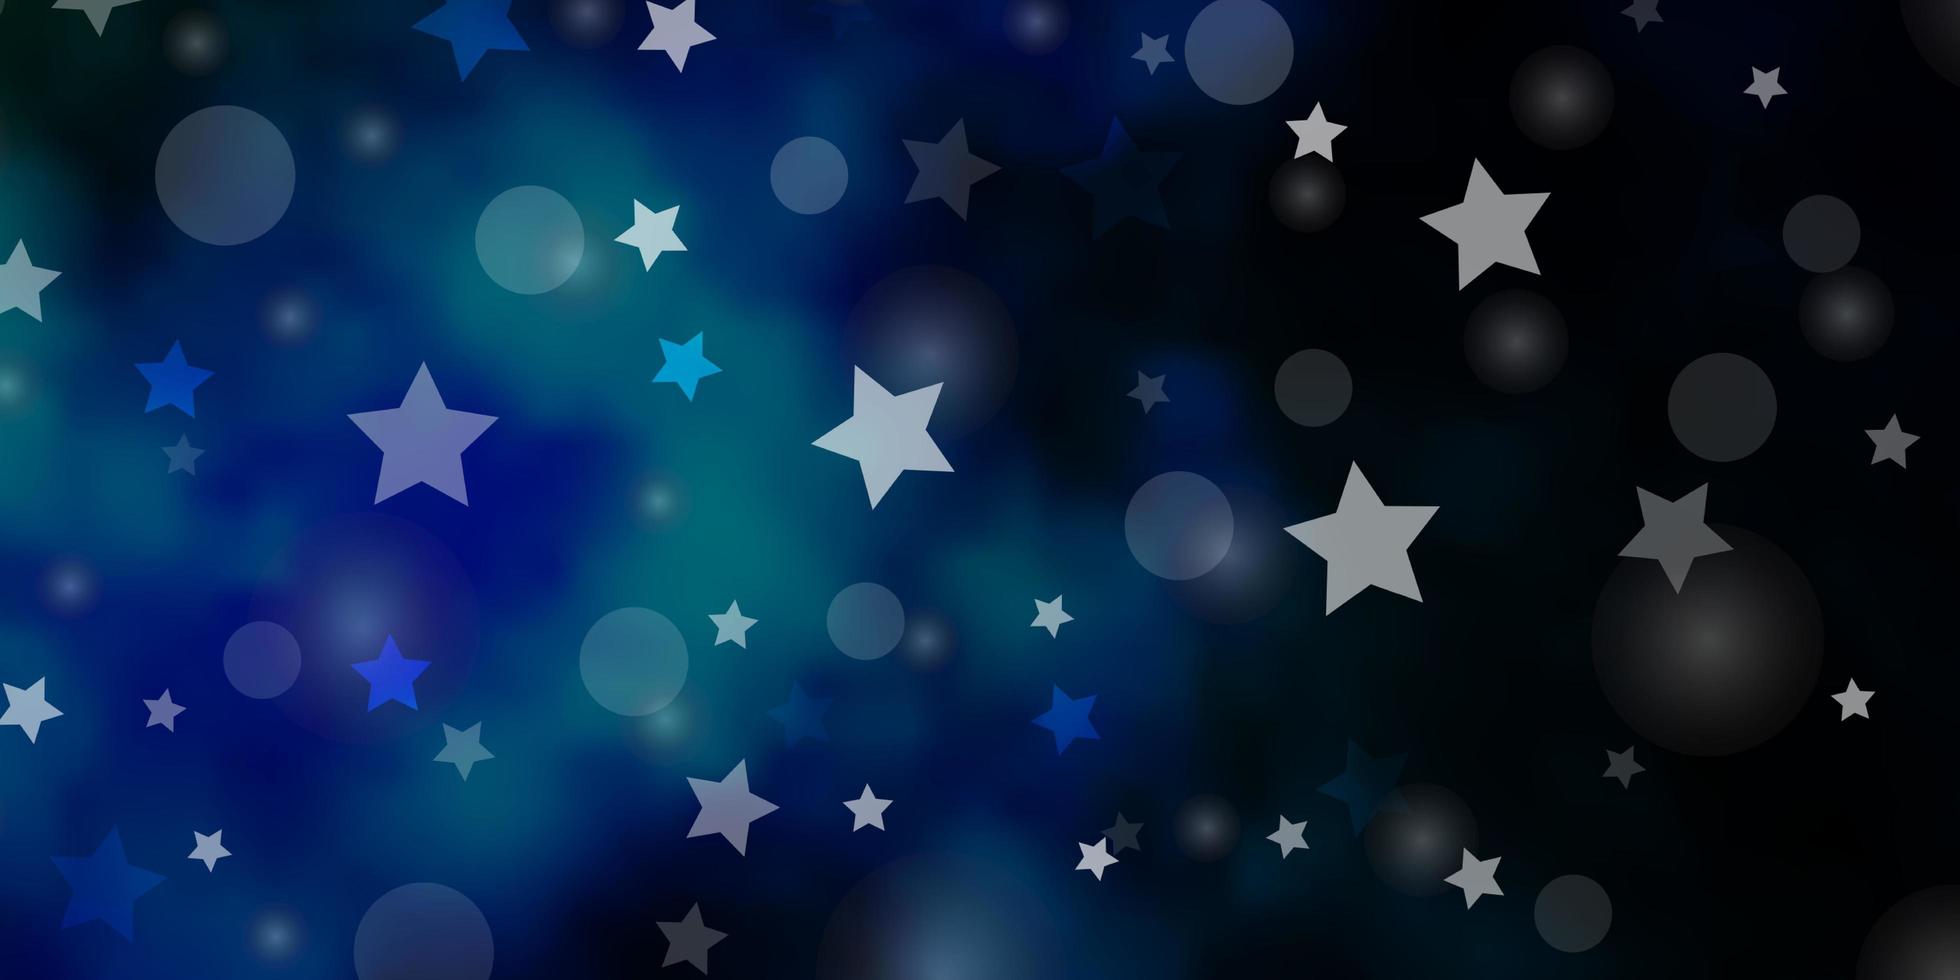 sfondo vettoriale blu scuro, verde con cerchi, stelle. illustrazione astratta glitterata con gocce colorate, stelle. design per carta da parati, produttori di tessuti.